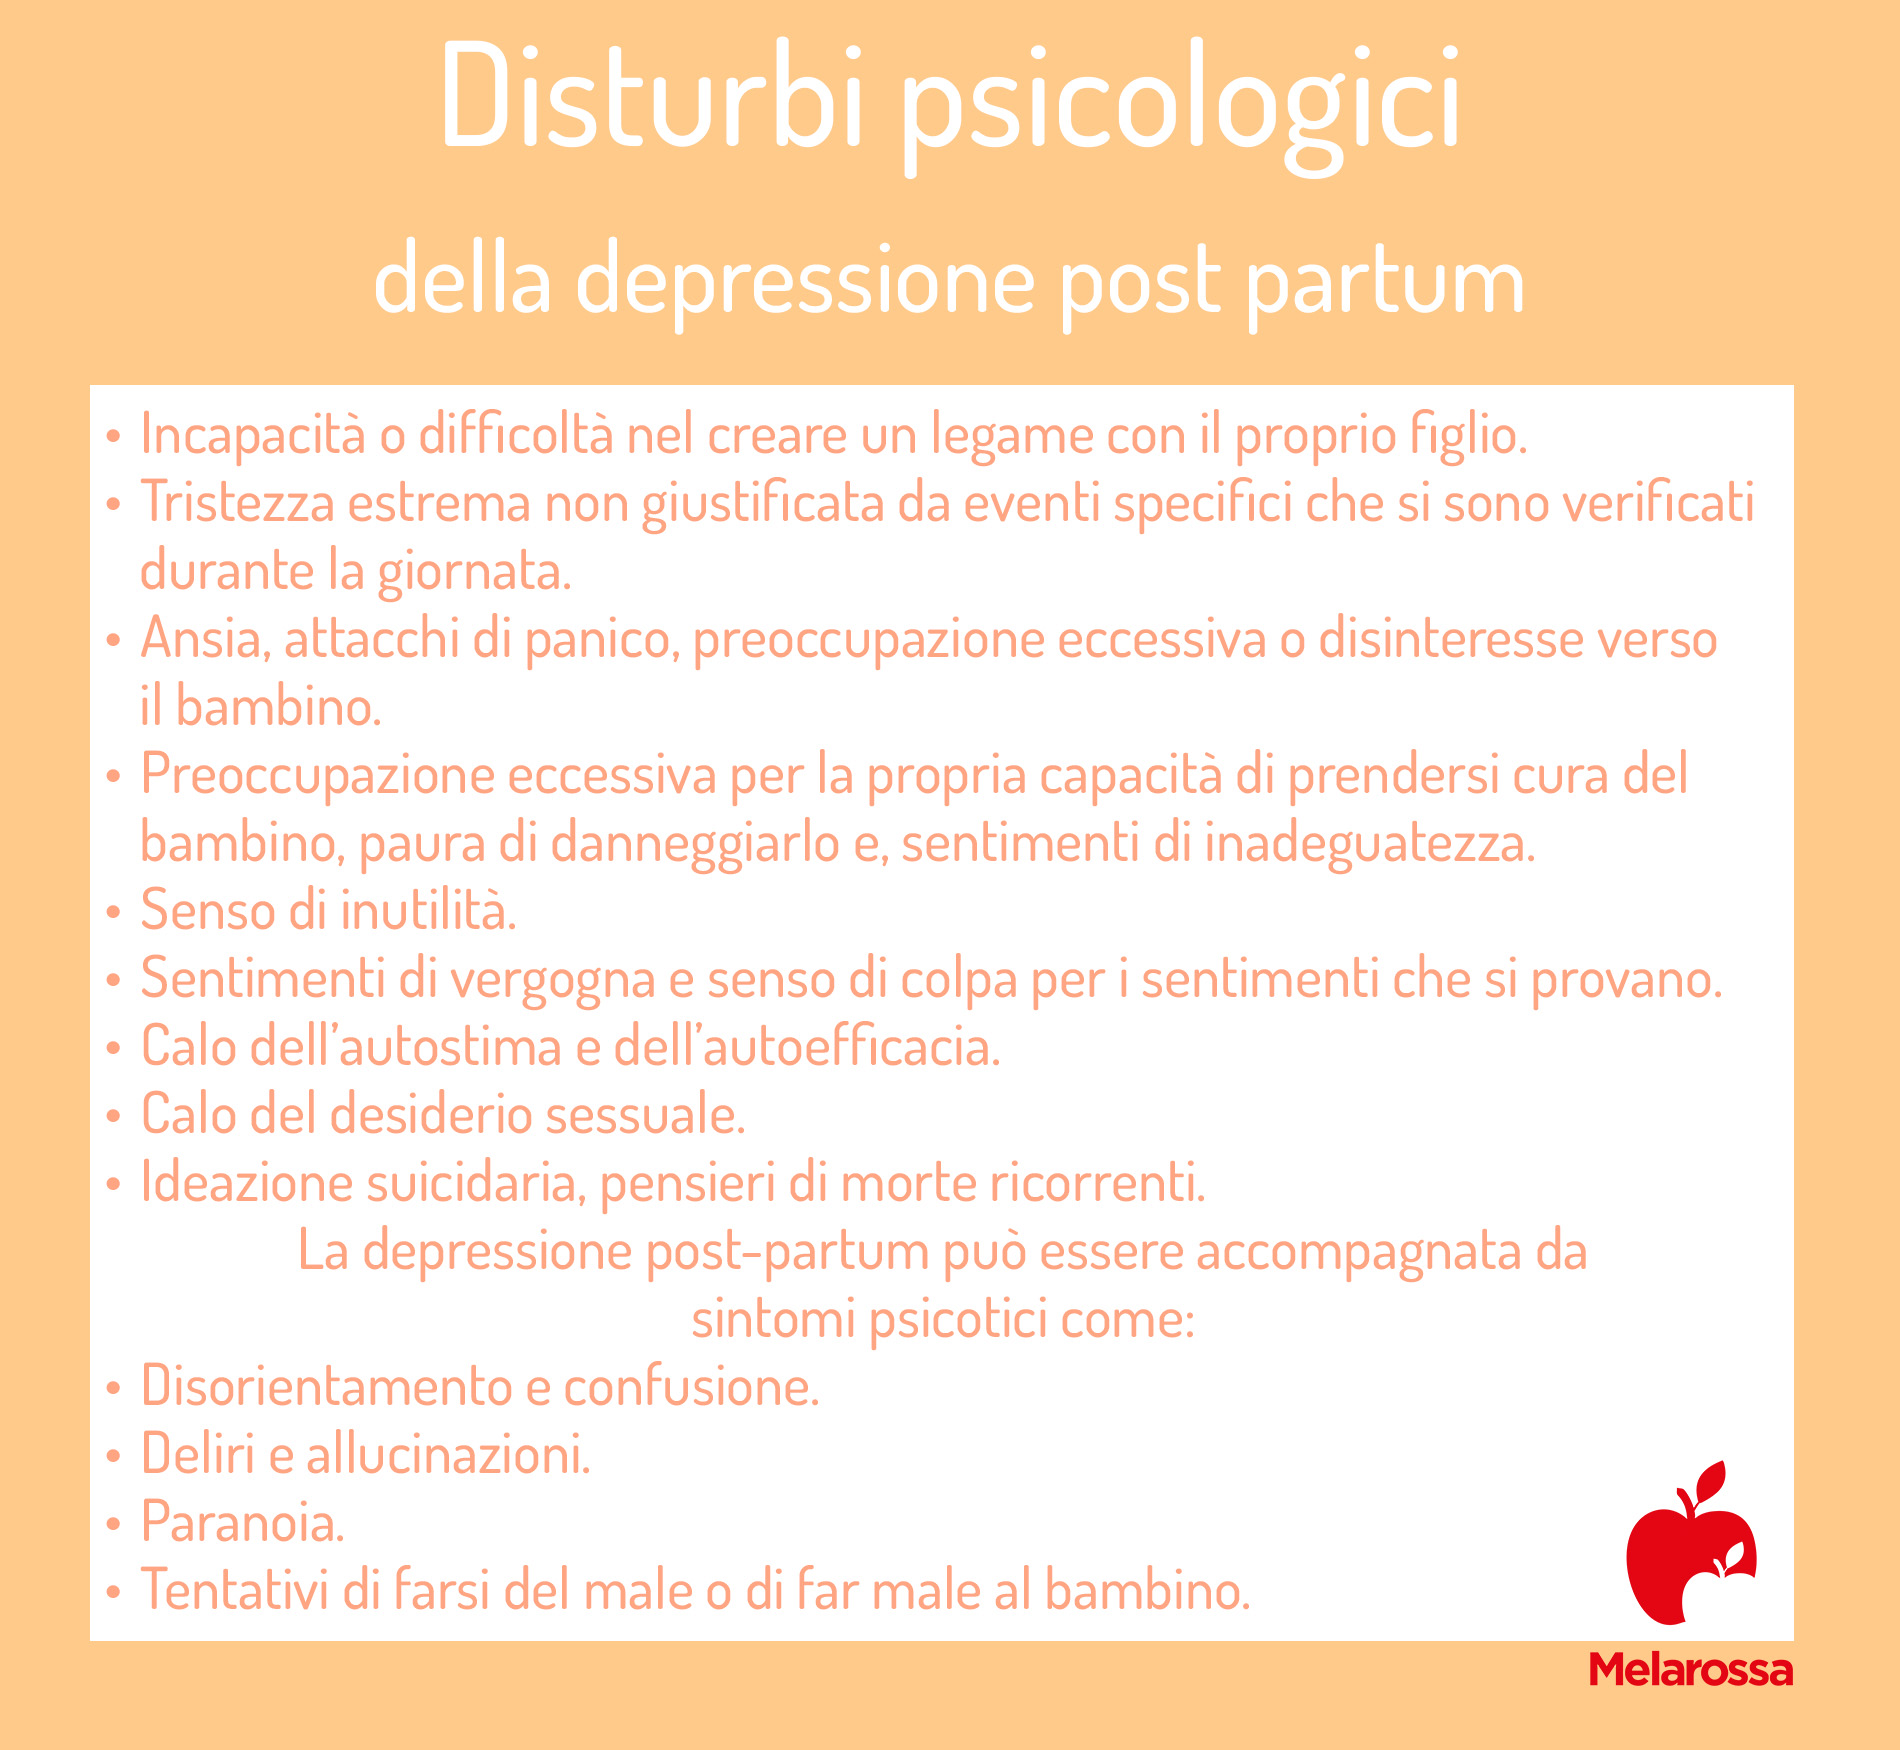 depressione post partum: disturbi psicologici